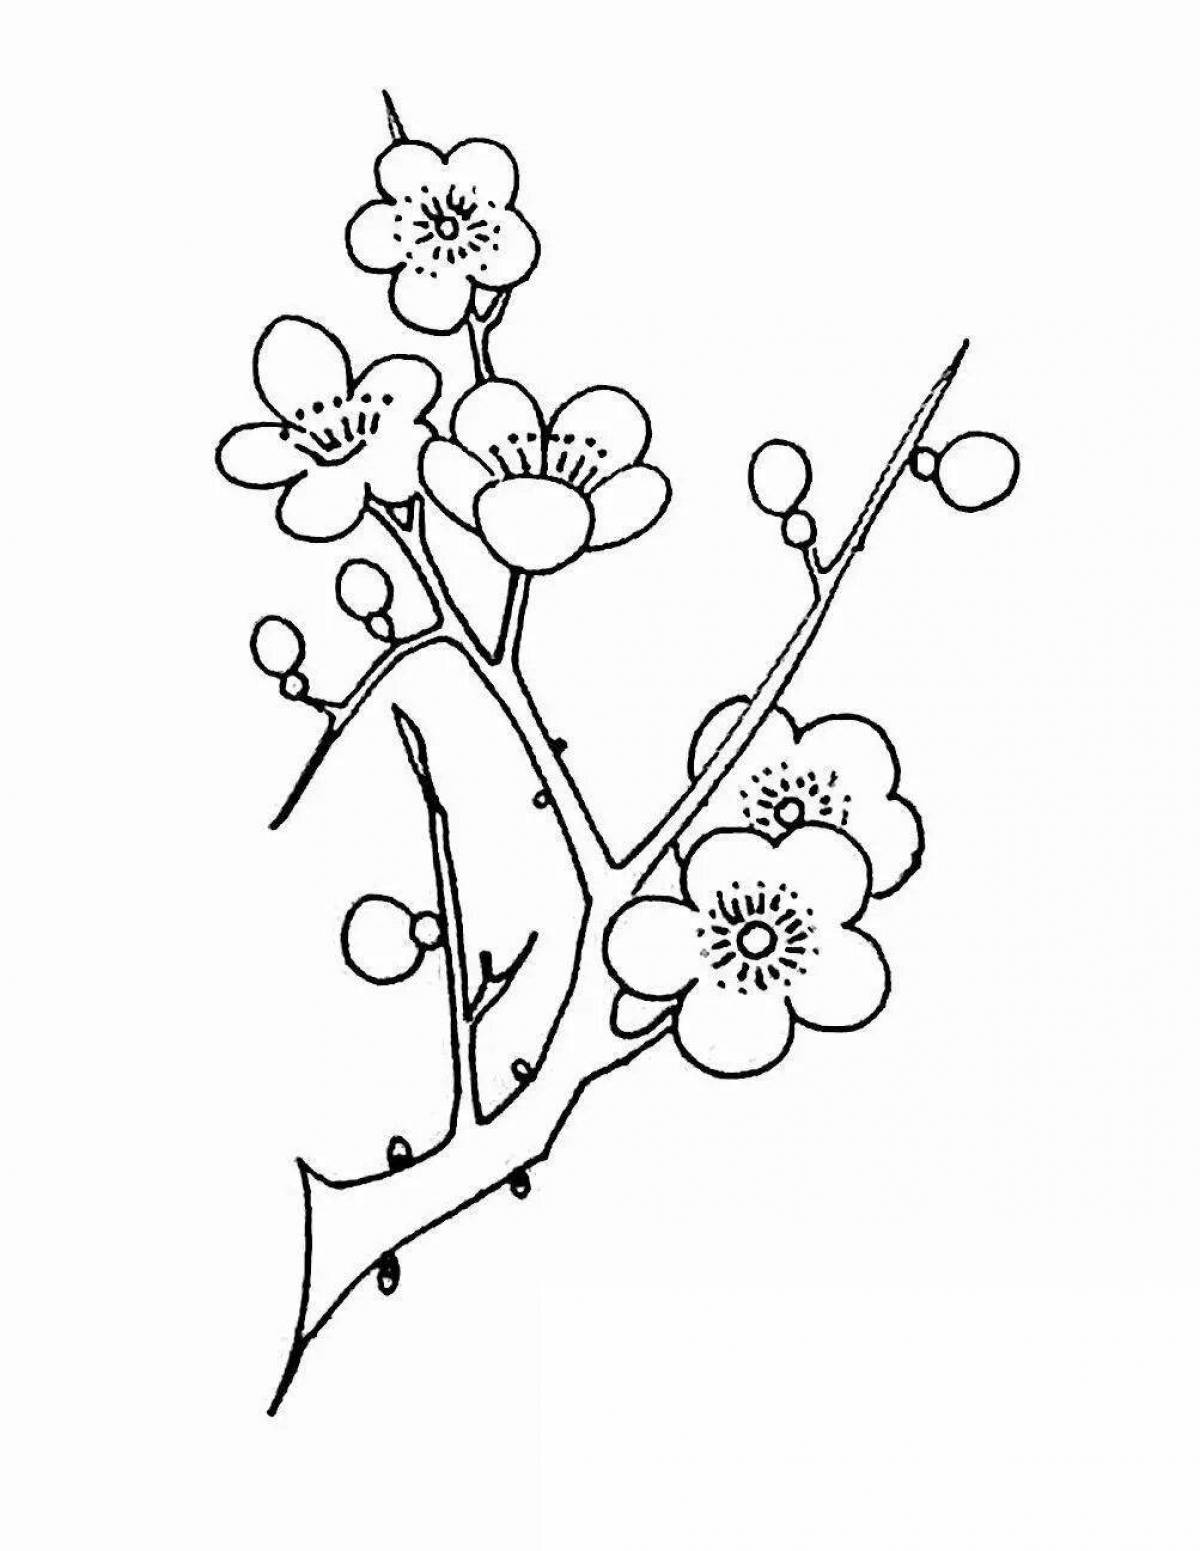 Shiny sakura branch coloring book for kids